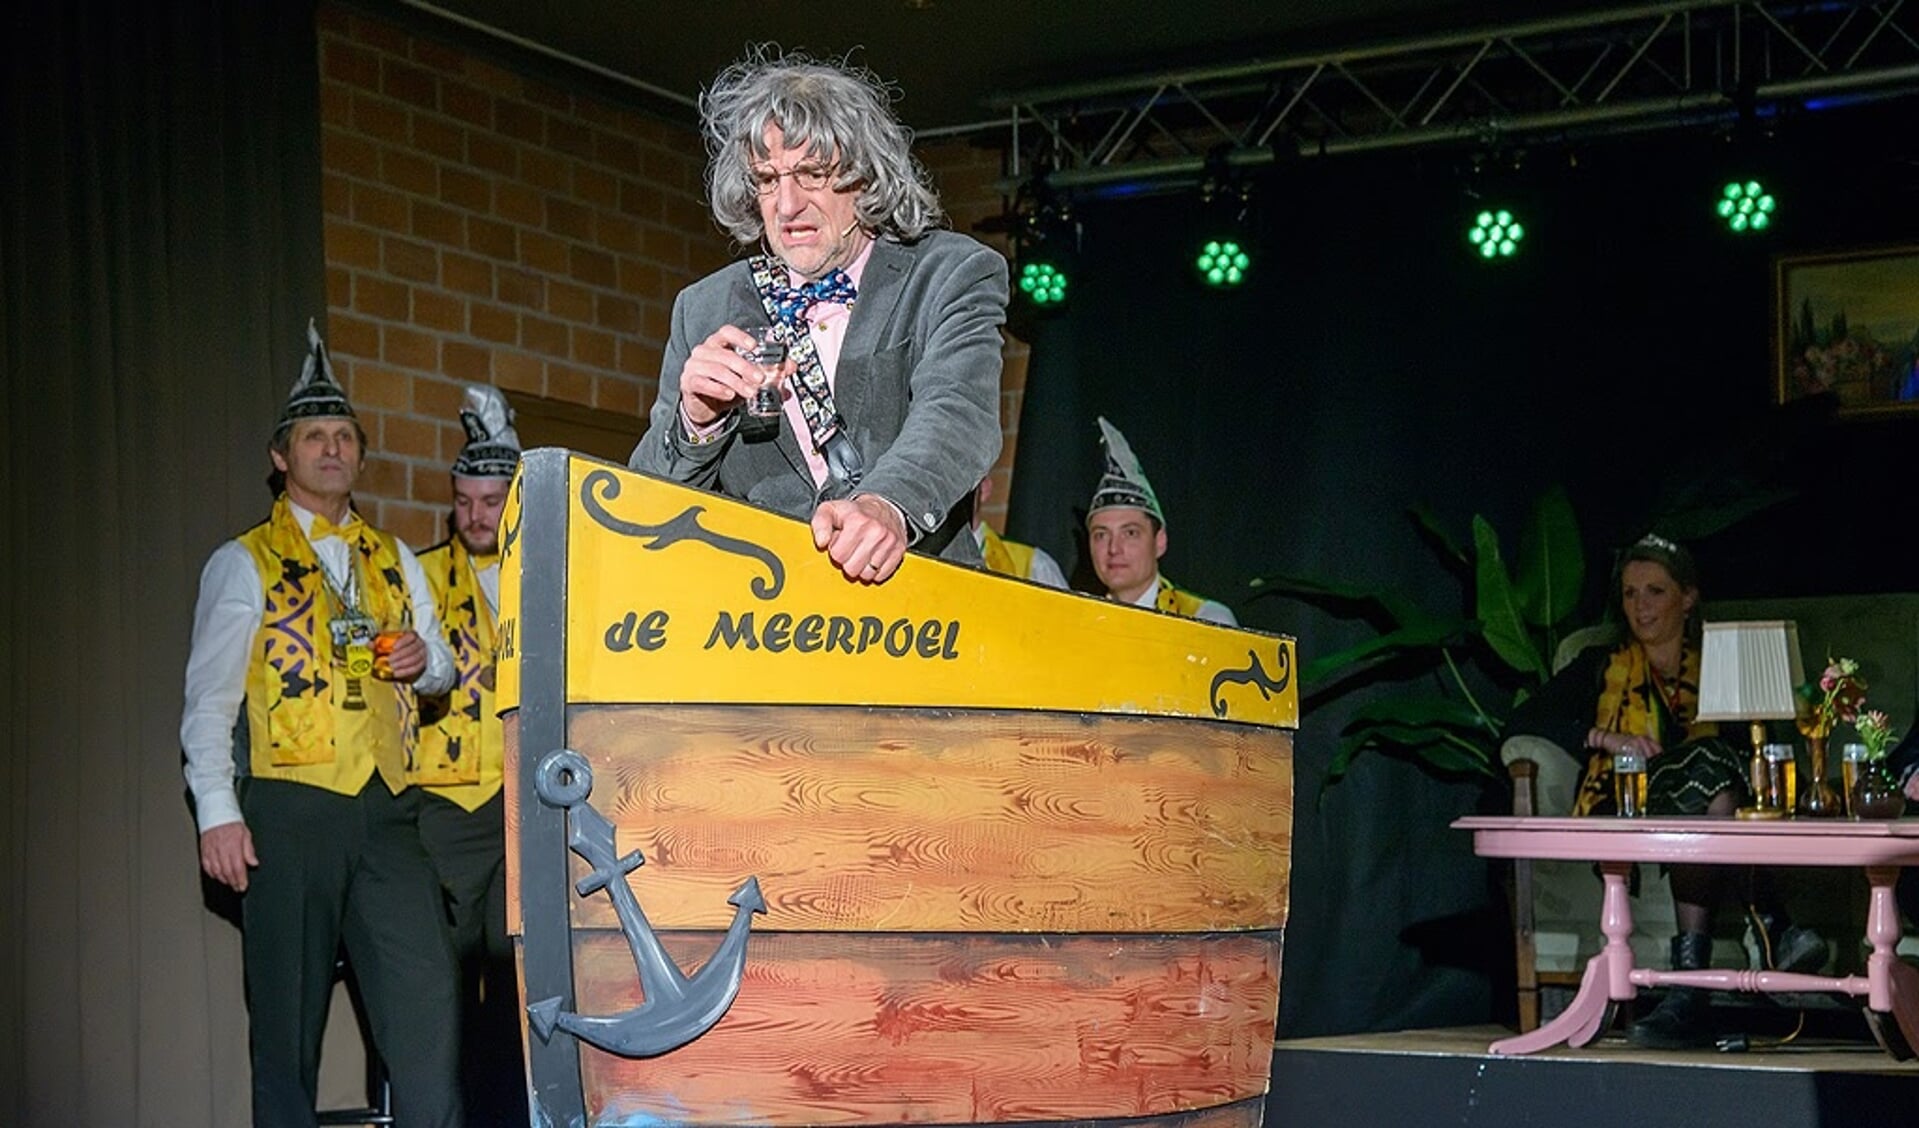 Hans Keeris, Brabants kampioen tonpraoten, was ook aanwezig tijdens de zàonikaovend van De Meerpoel. (Foto: Eric Driessen/Siris)